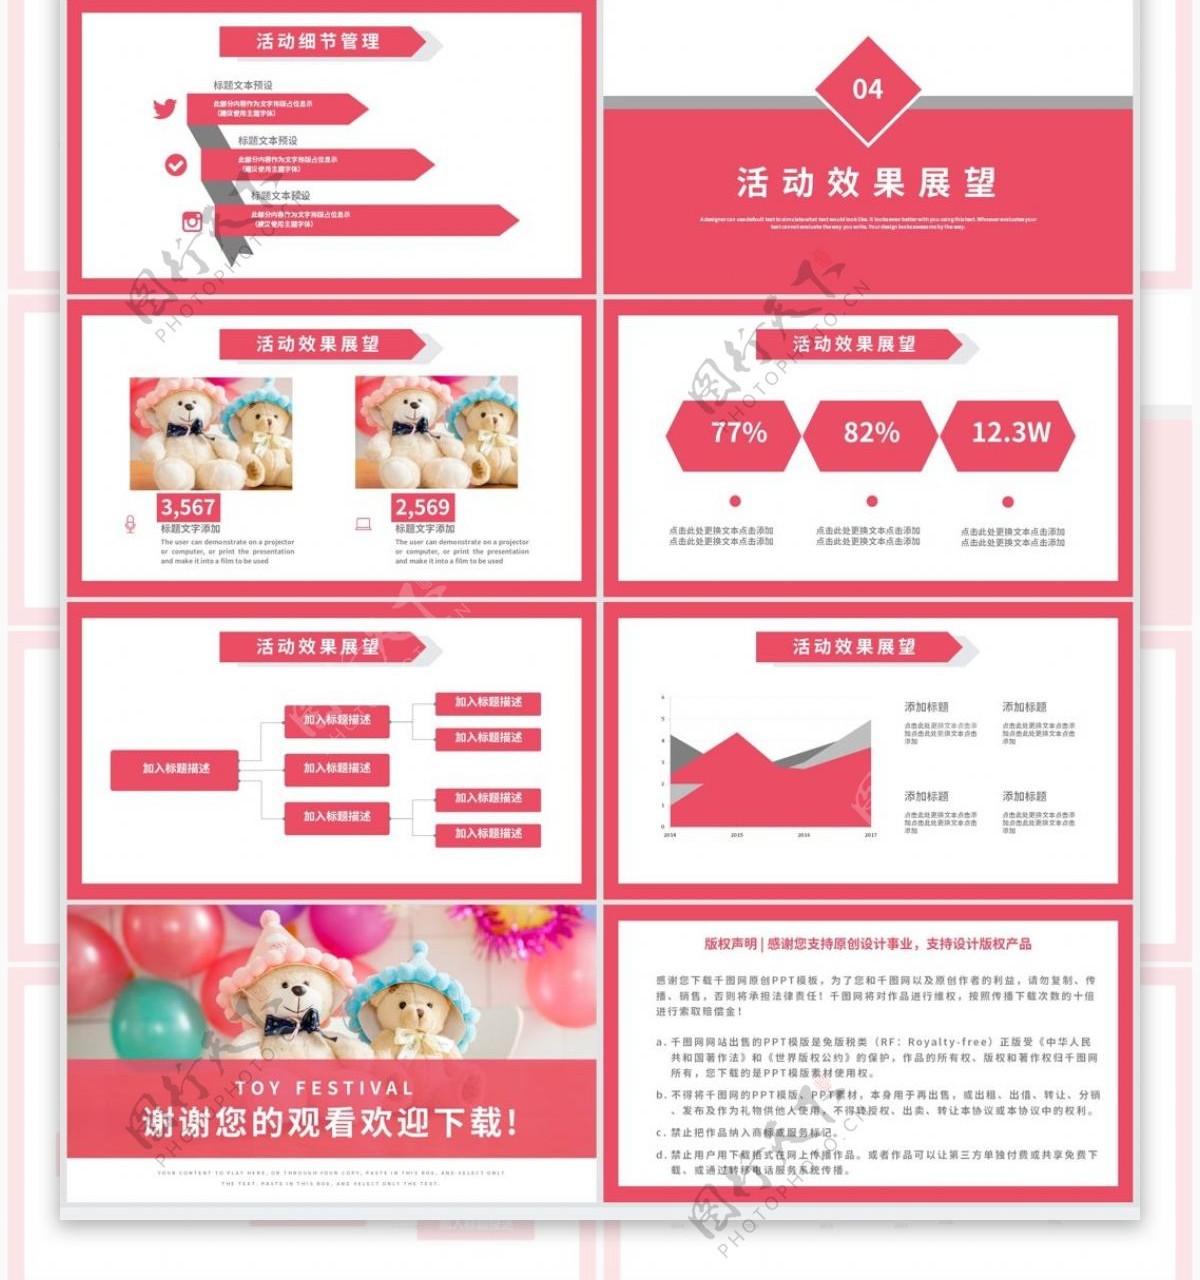 粉色简约天猫国际玩具节营销策划PPT模板